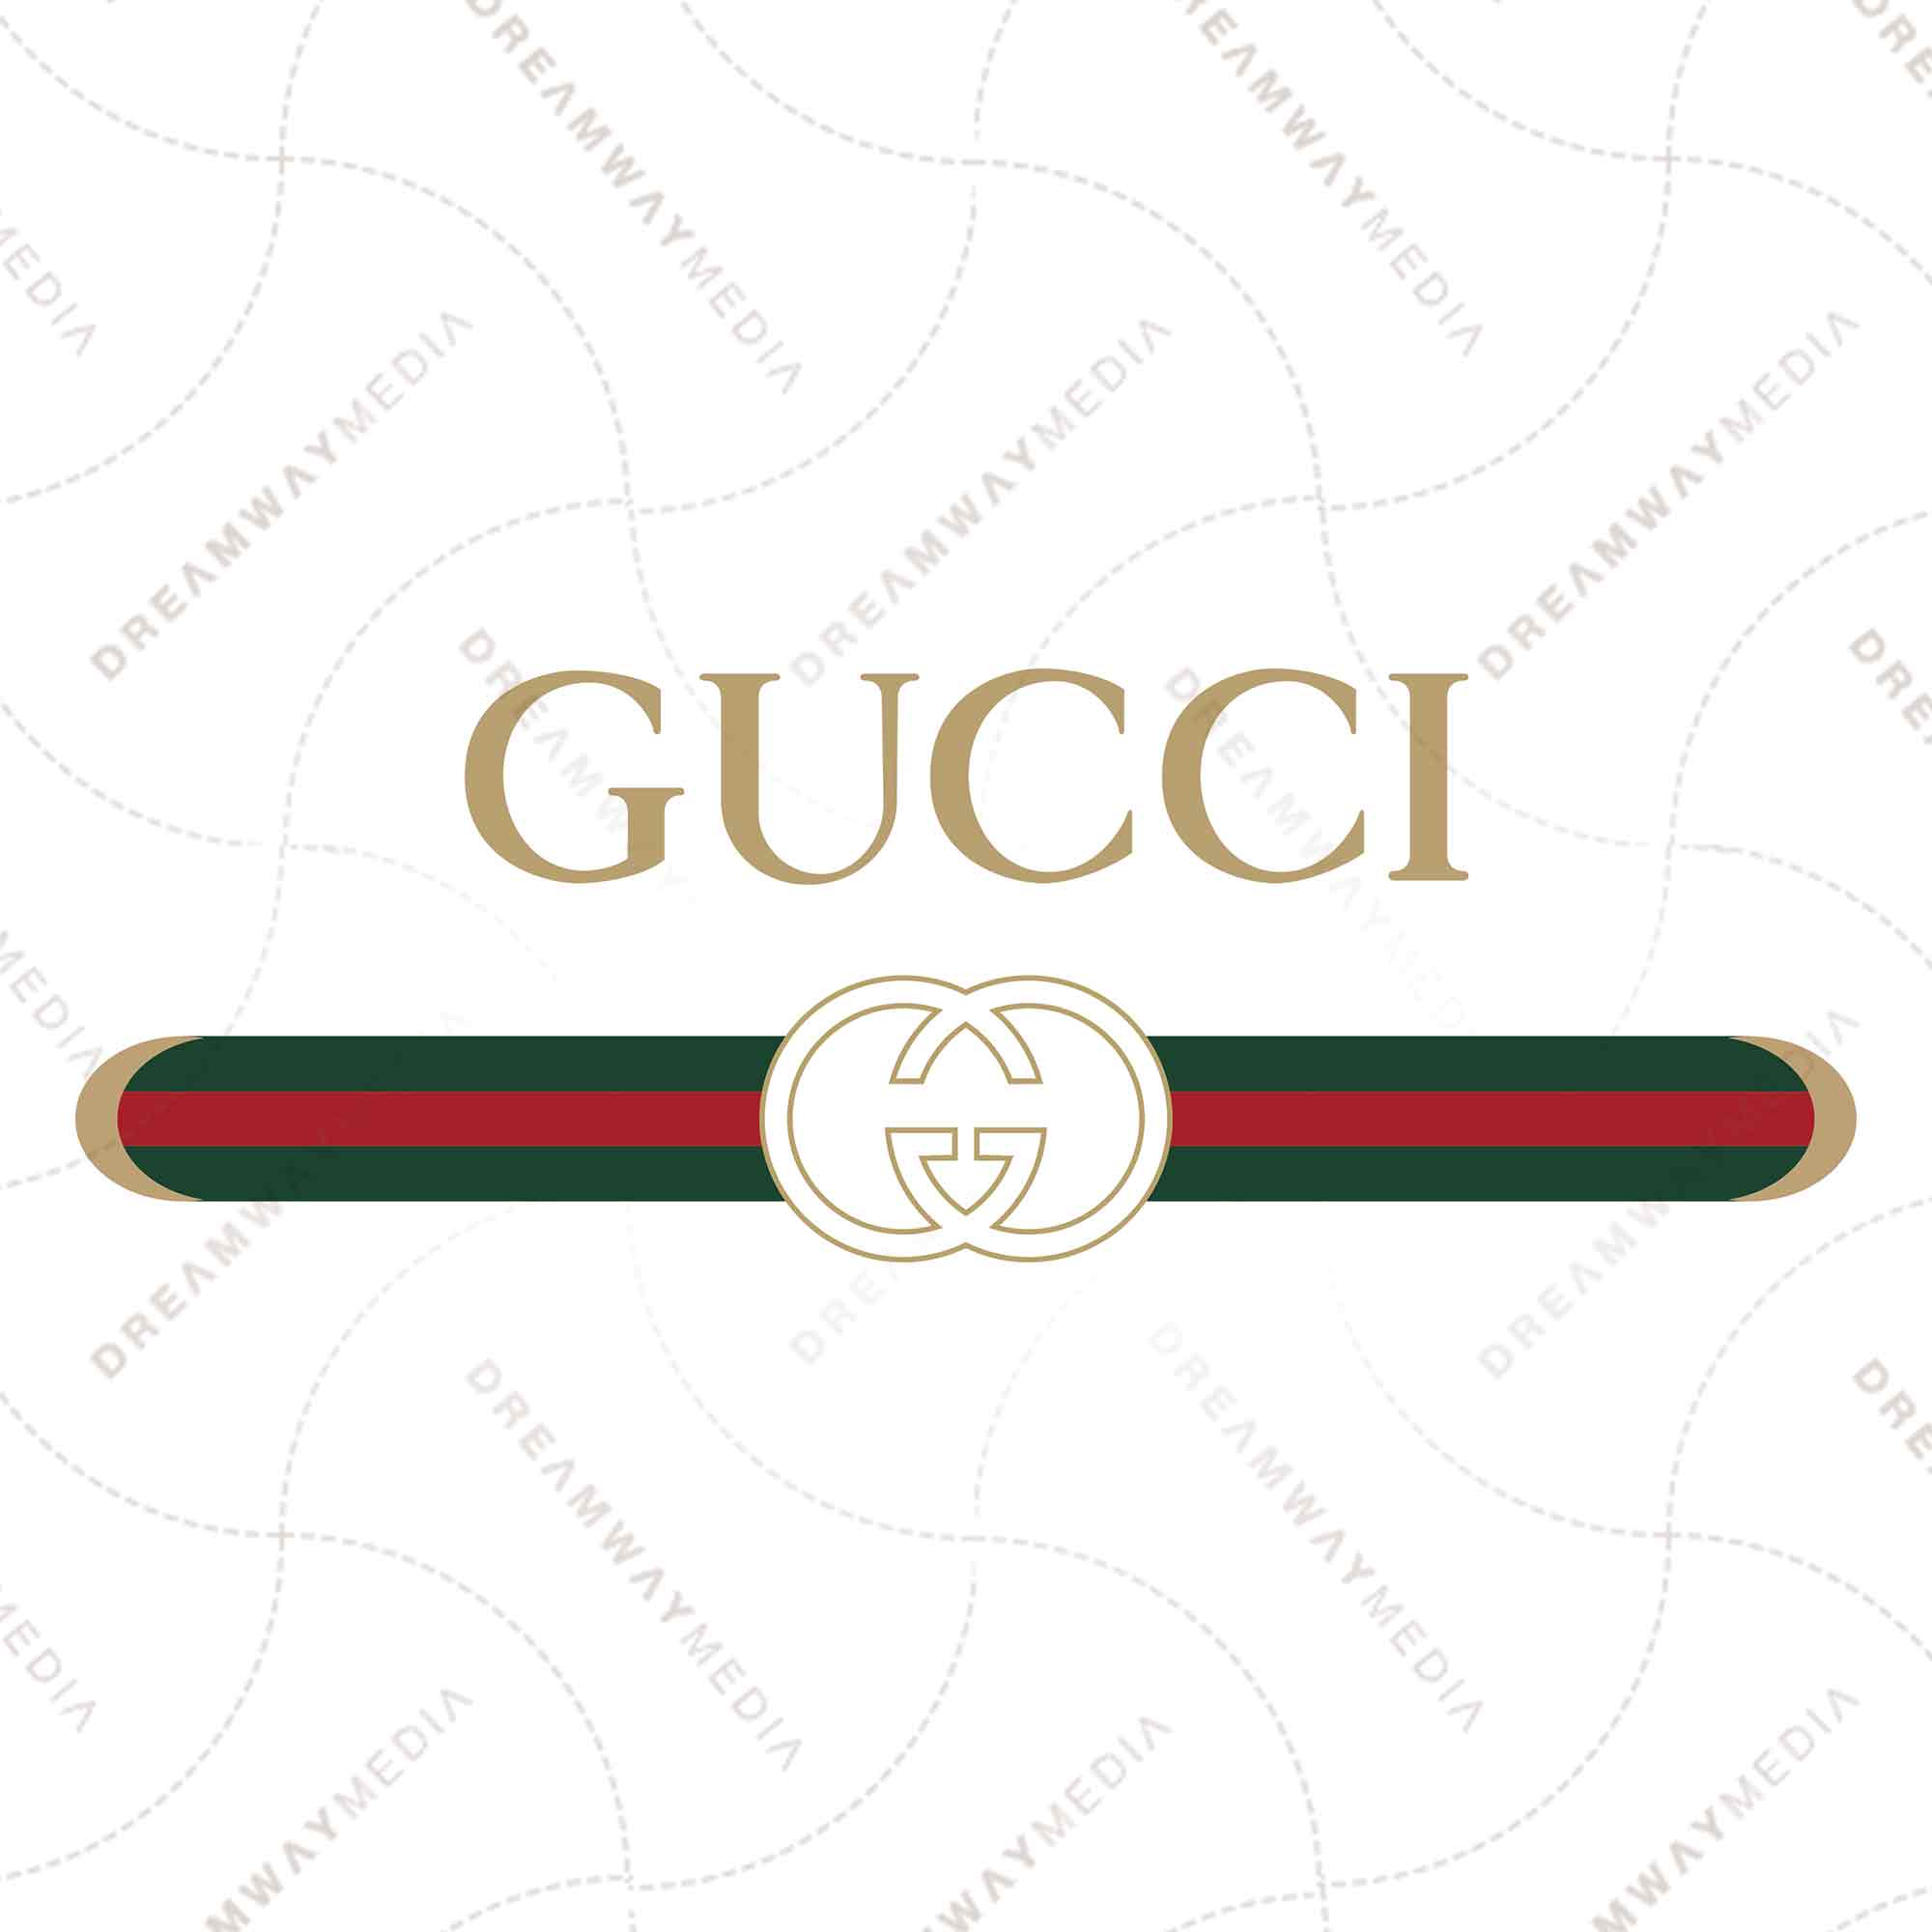 gucci design logo